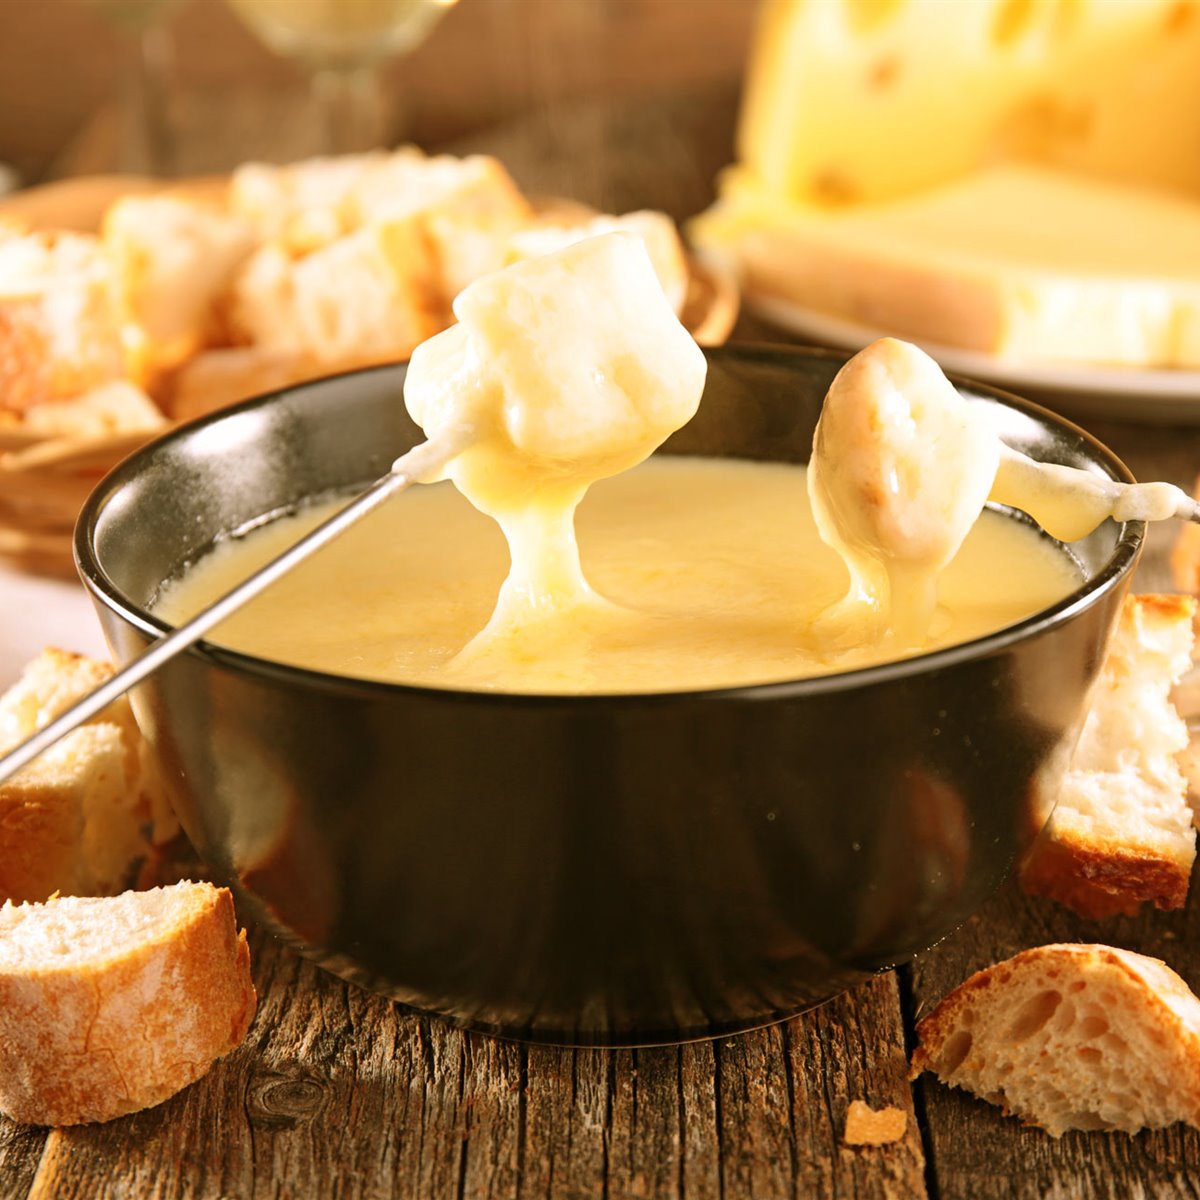 Cómo hacer una fondue de queso auténtica, como la hacen en Suiza